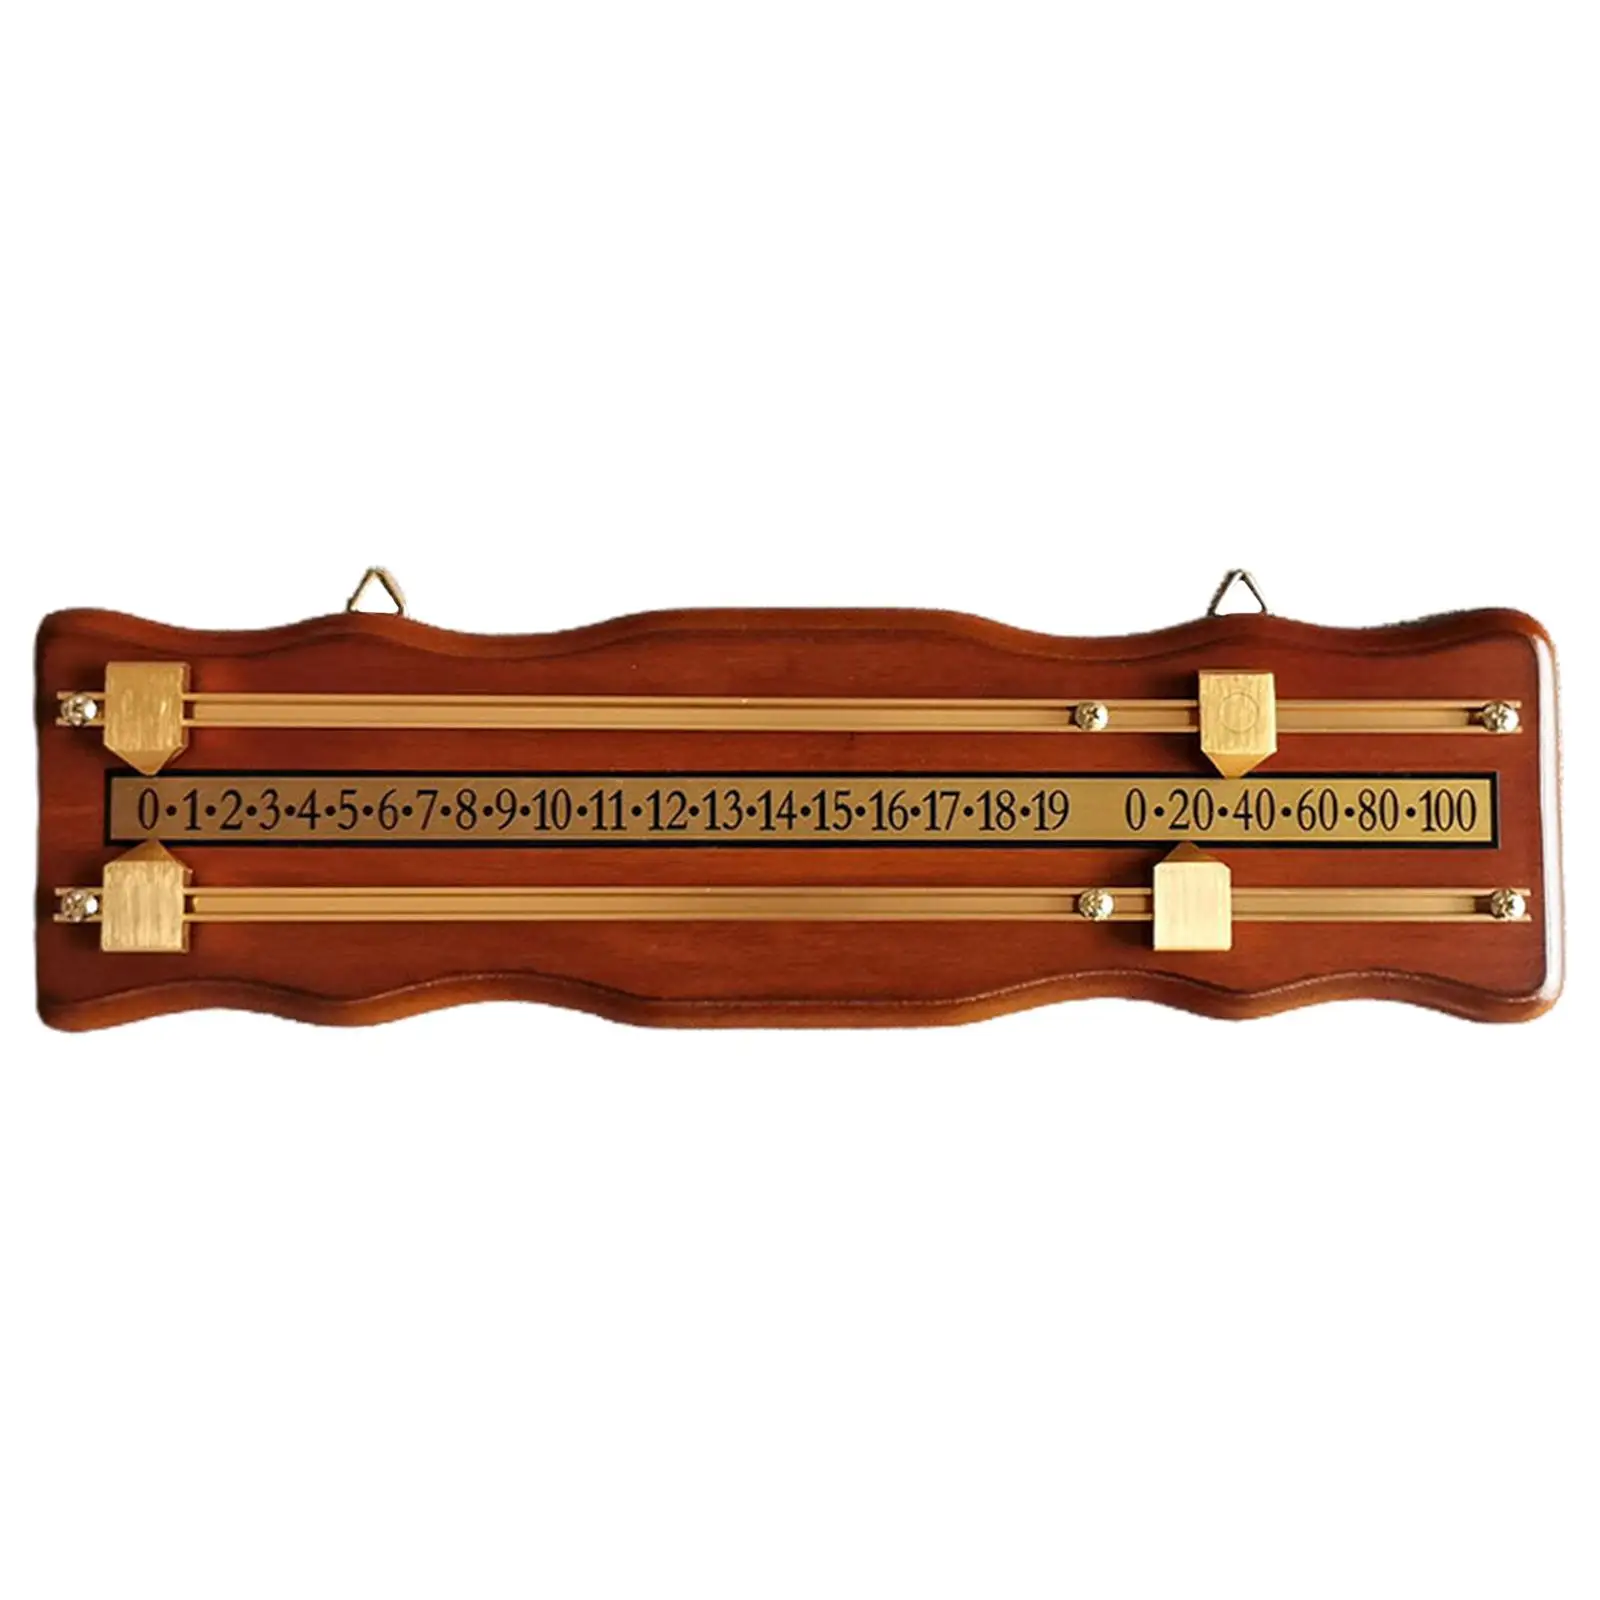 Wood Snooker Billiard Score Board Score Keeper Shuffleboard Scoreboard